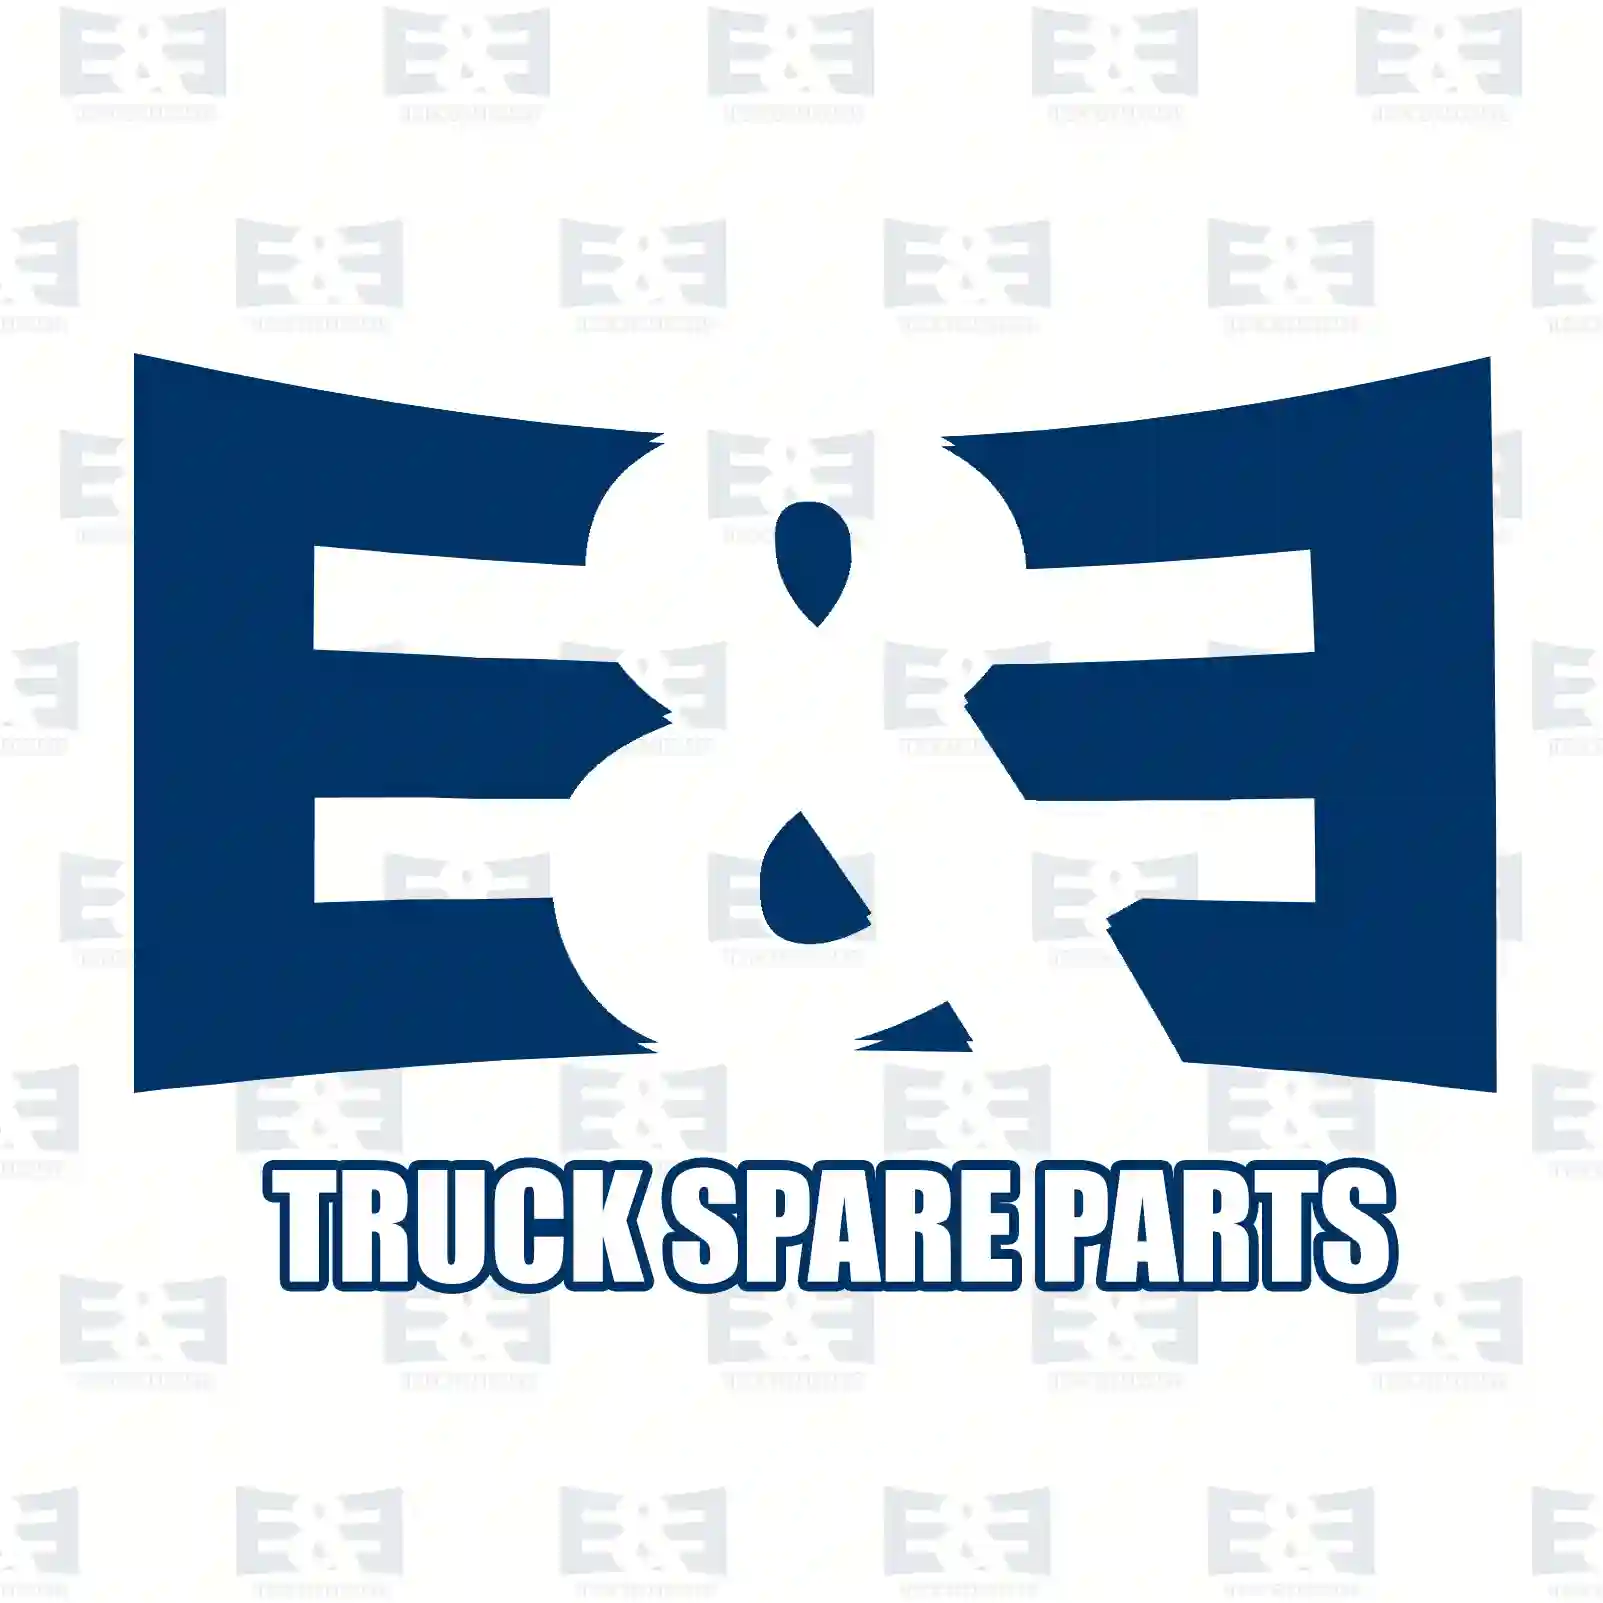 Air dryer, 2E2294824, ACU8494, ACU8494A, ACU8494R ||  2E2294824 E&E Truck Spare Parts | Truck Spare Parts, Auotomotive Spare Parts Air dryer, 2E2294824, ACU8494, ACU8494A, ACU8494R ||  2E2294824 E&E Truck Spare Parts | Truck Spare Parts, Auotomotive Spare Parts